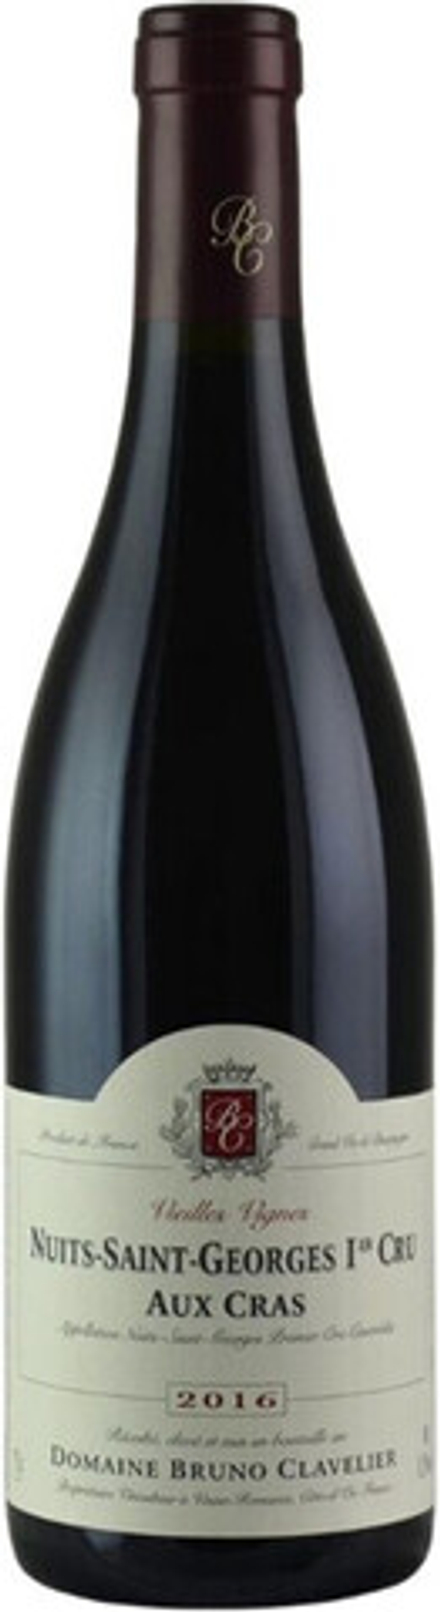 Вино Domaine Bruno Clavelier Nuits-Saint-Georges 1er Cru Aux Cras Vieilles Vignes AOC, 0,75 л.